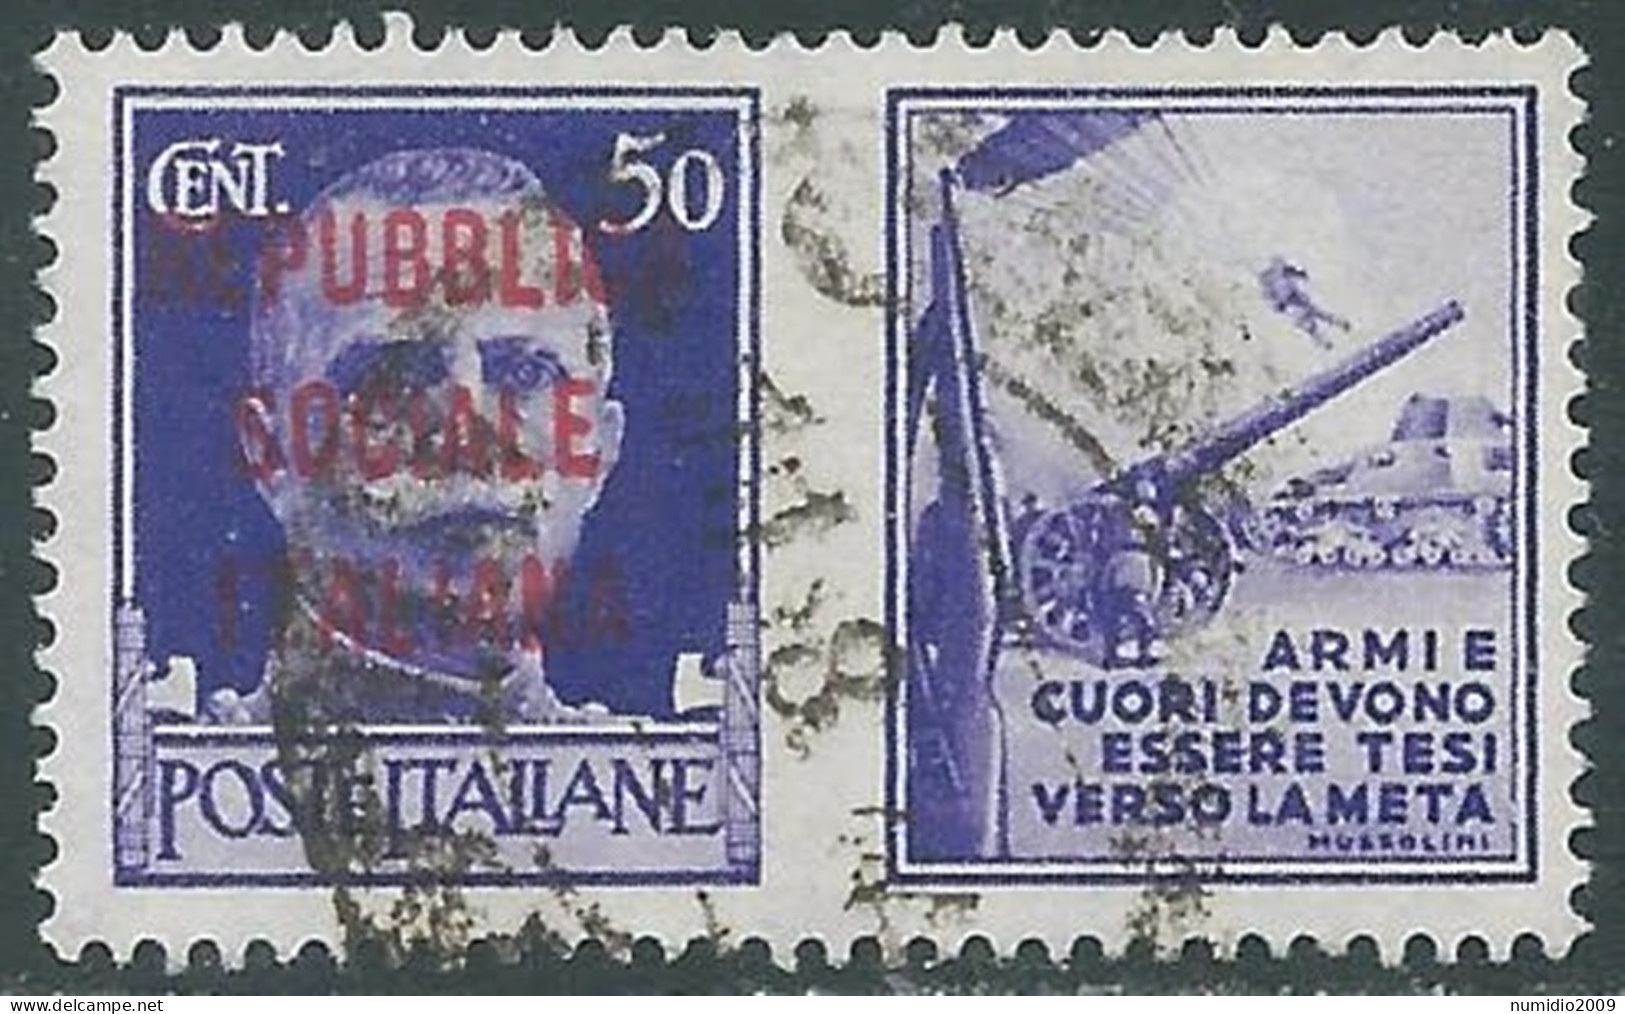 1944 RSI PROPAGANDA DI GUERRA USATO 50 CENT - RC33-2 - War Propaganda